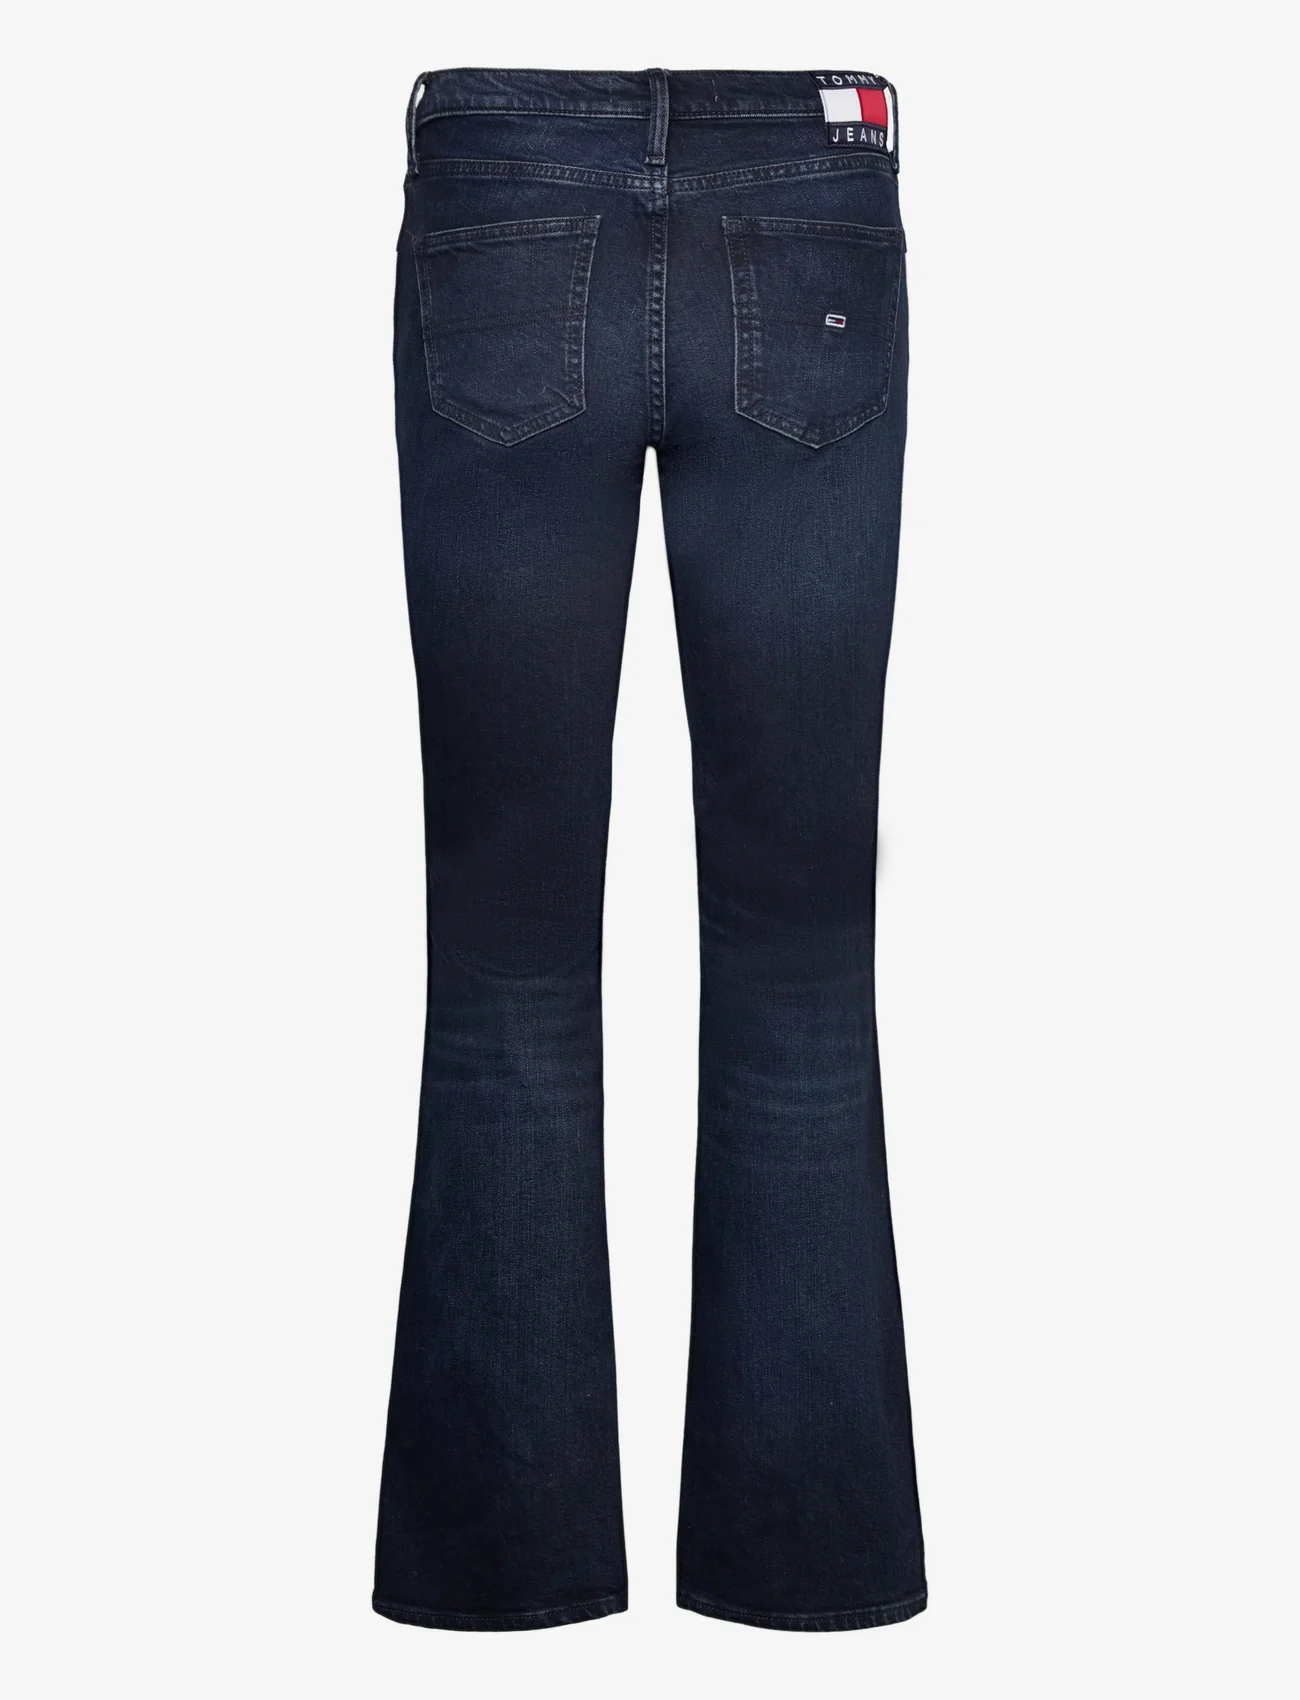 Tommy Jeans - MADDIE MR BC DG5161 - flared jeans - denim dark - 1